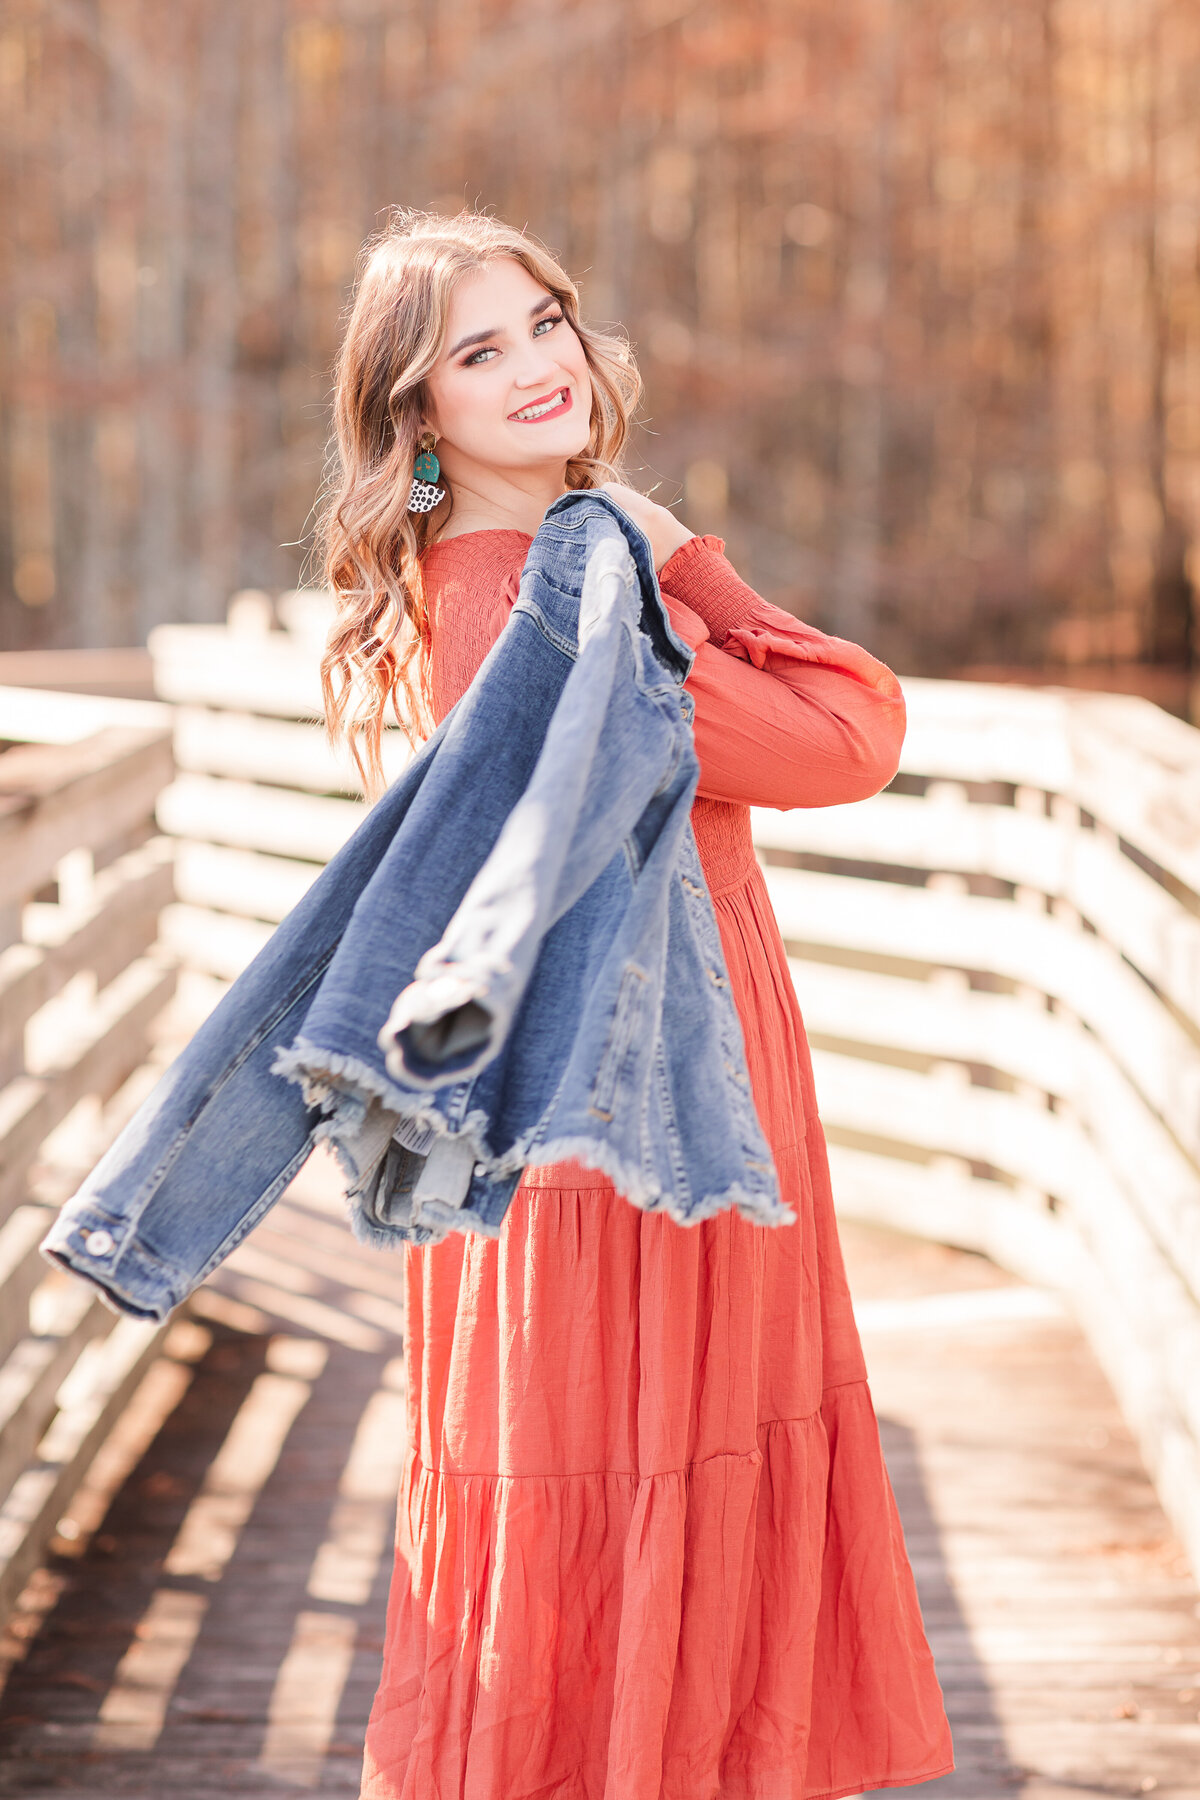 Senior girl in rustic orange dress with jean jacket on shoulder